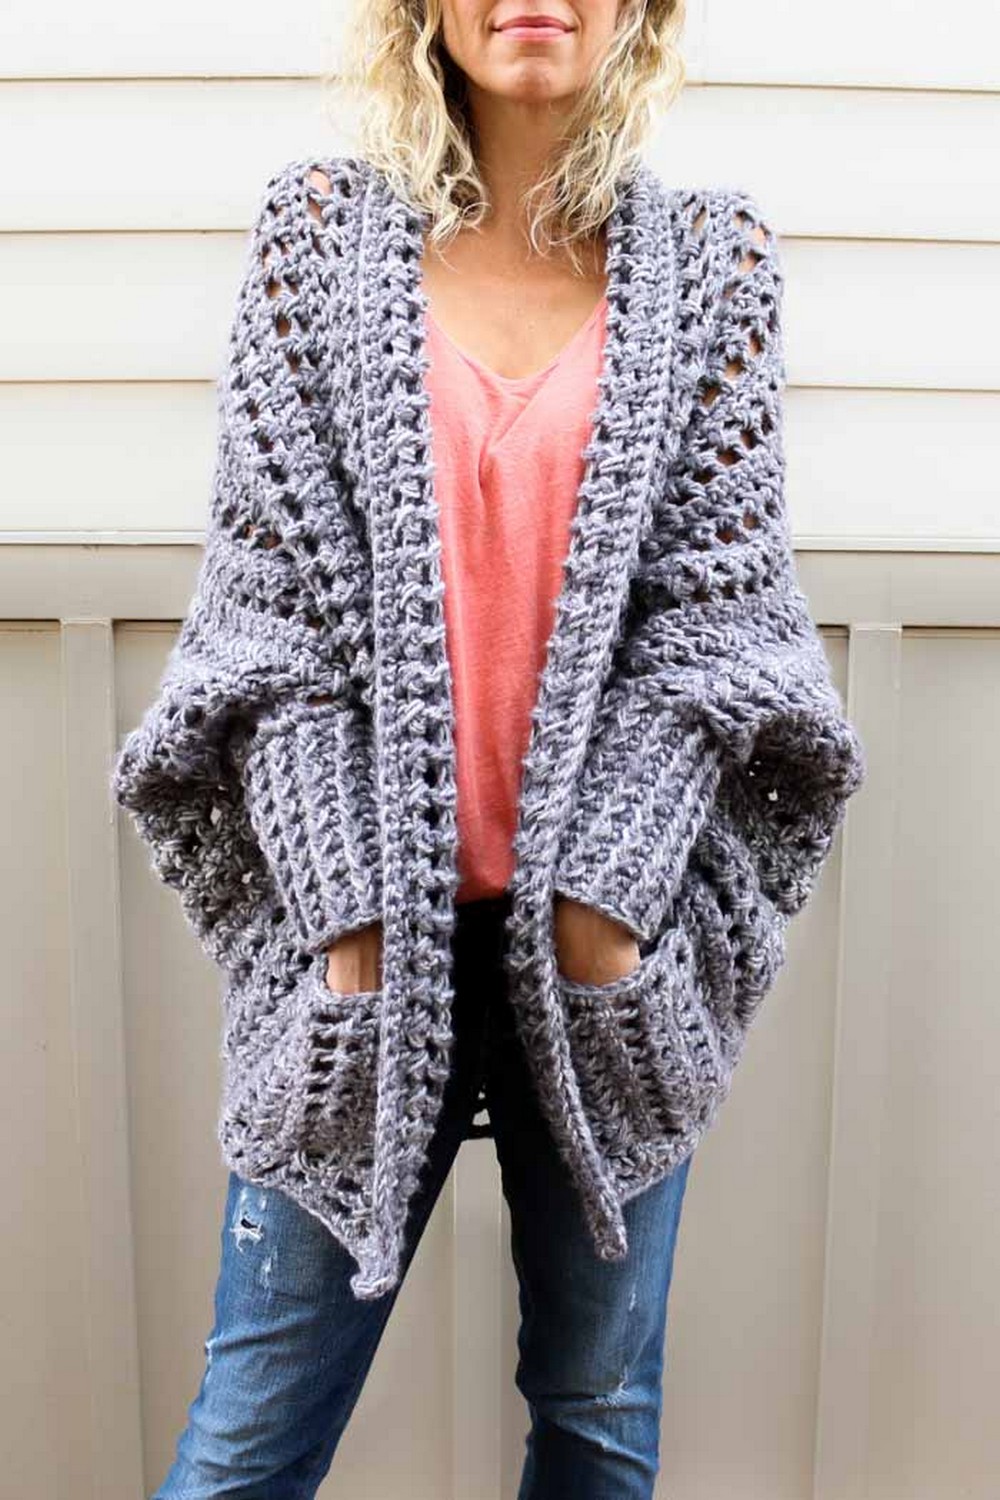 Crochet sweater pattern